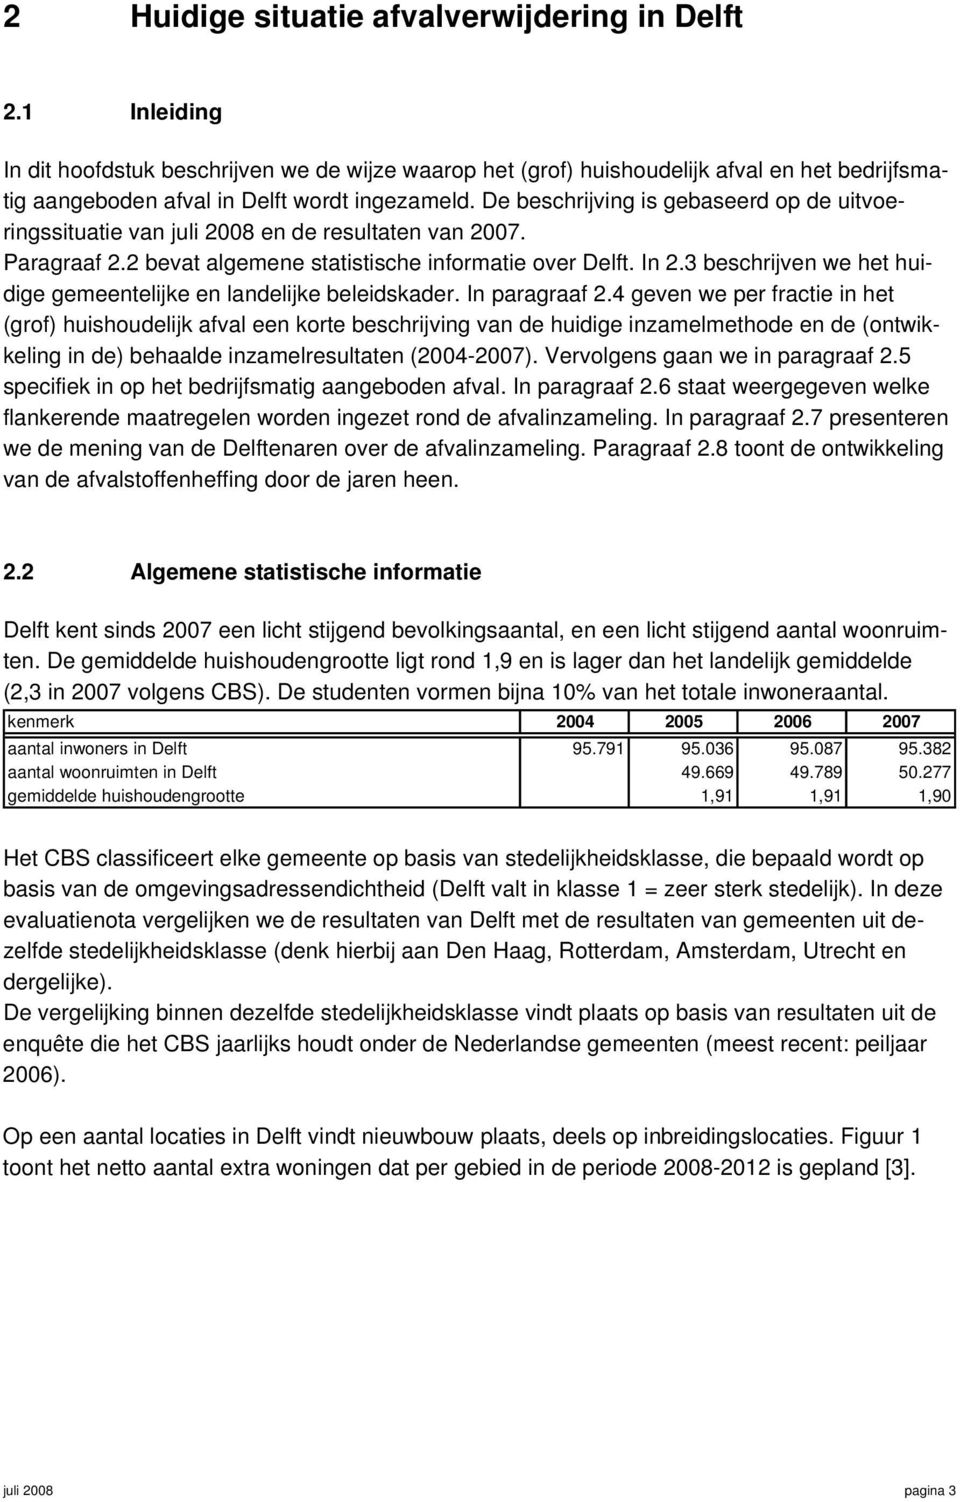 De beschrijving is gebaseerd op de uitvoeringssituatie van juli 2008 en de resultaten van 2007. Paragraaf 2.2 bevat algemene statistische informatie over Delft. In 2.